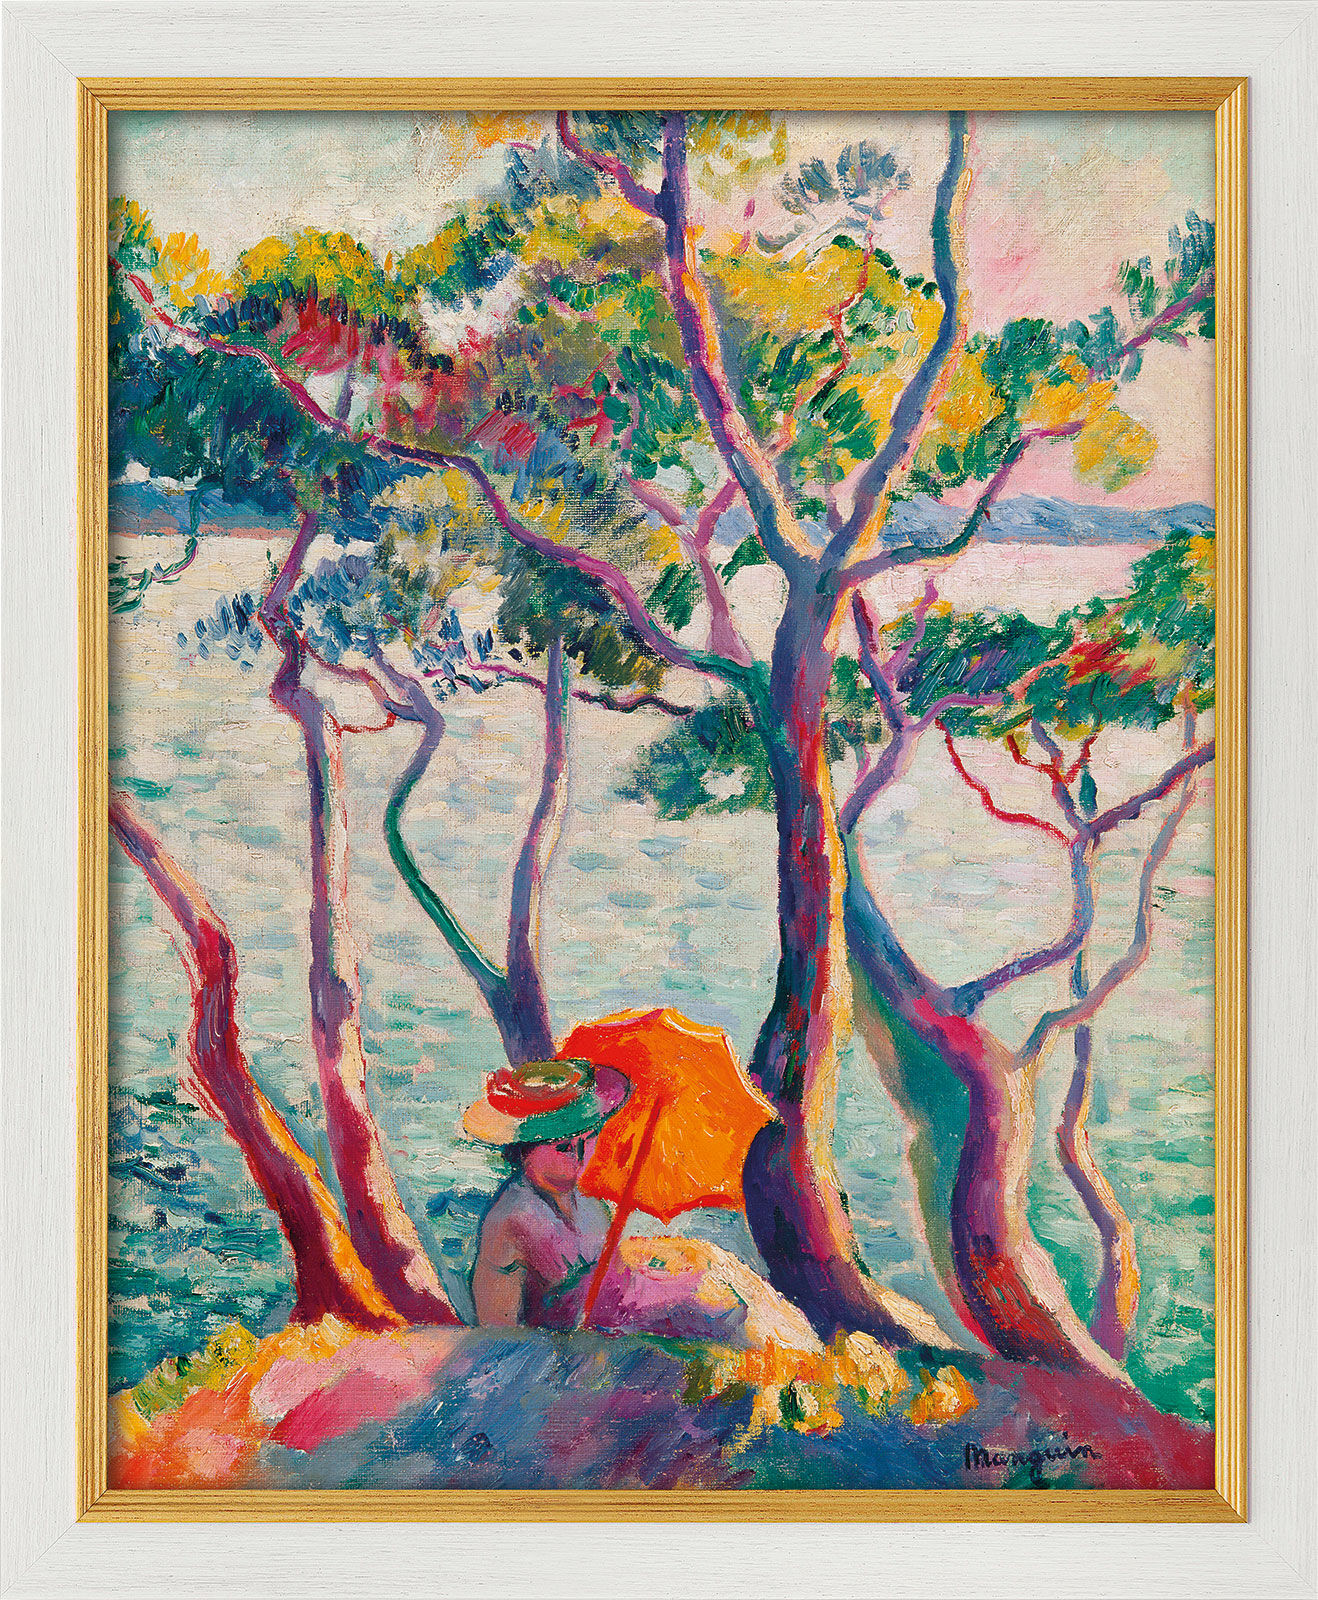 Tableau "Jeanne à l'ombrelle, Cavalière" (1905/1906), version encadrée blanc et or von Henri Manguin